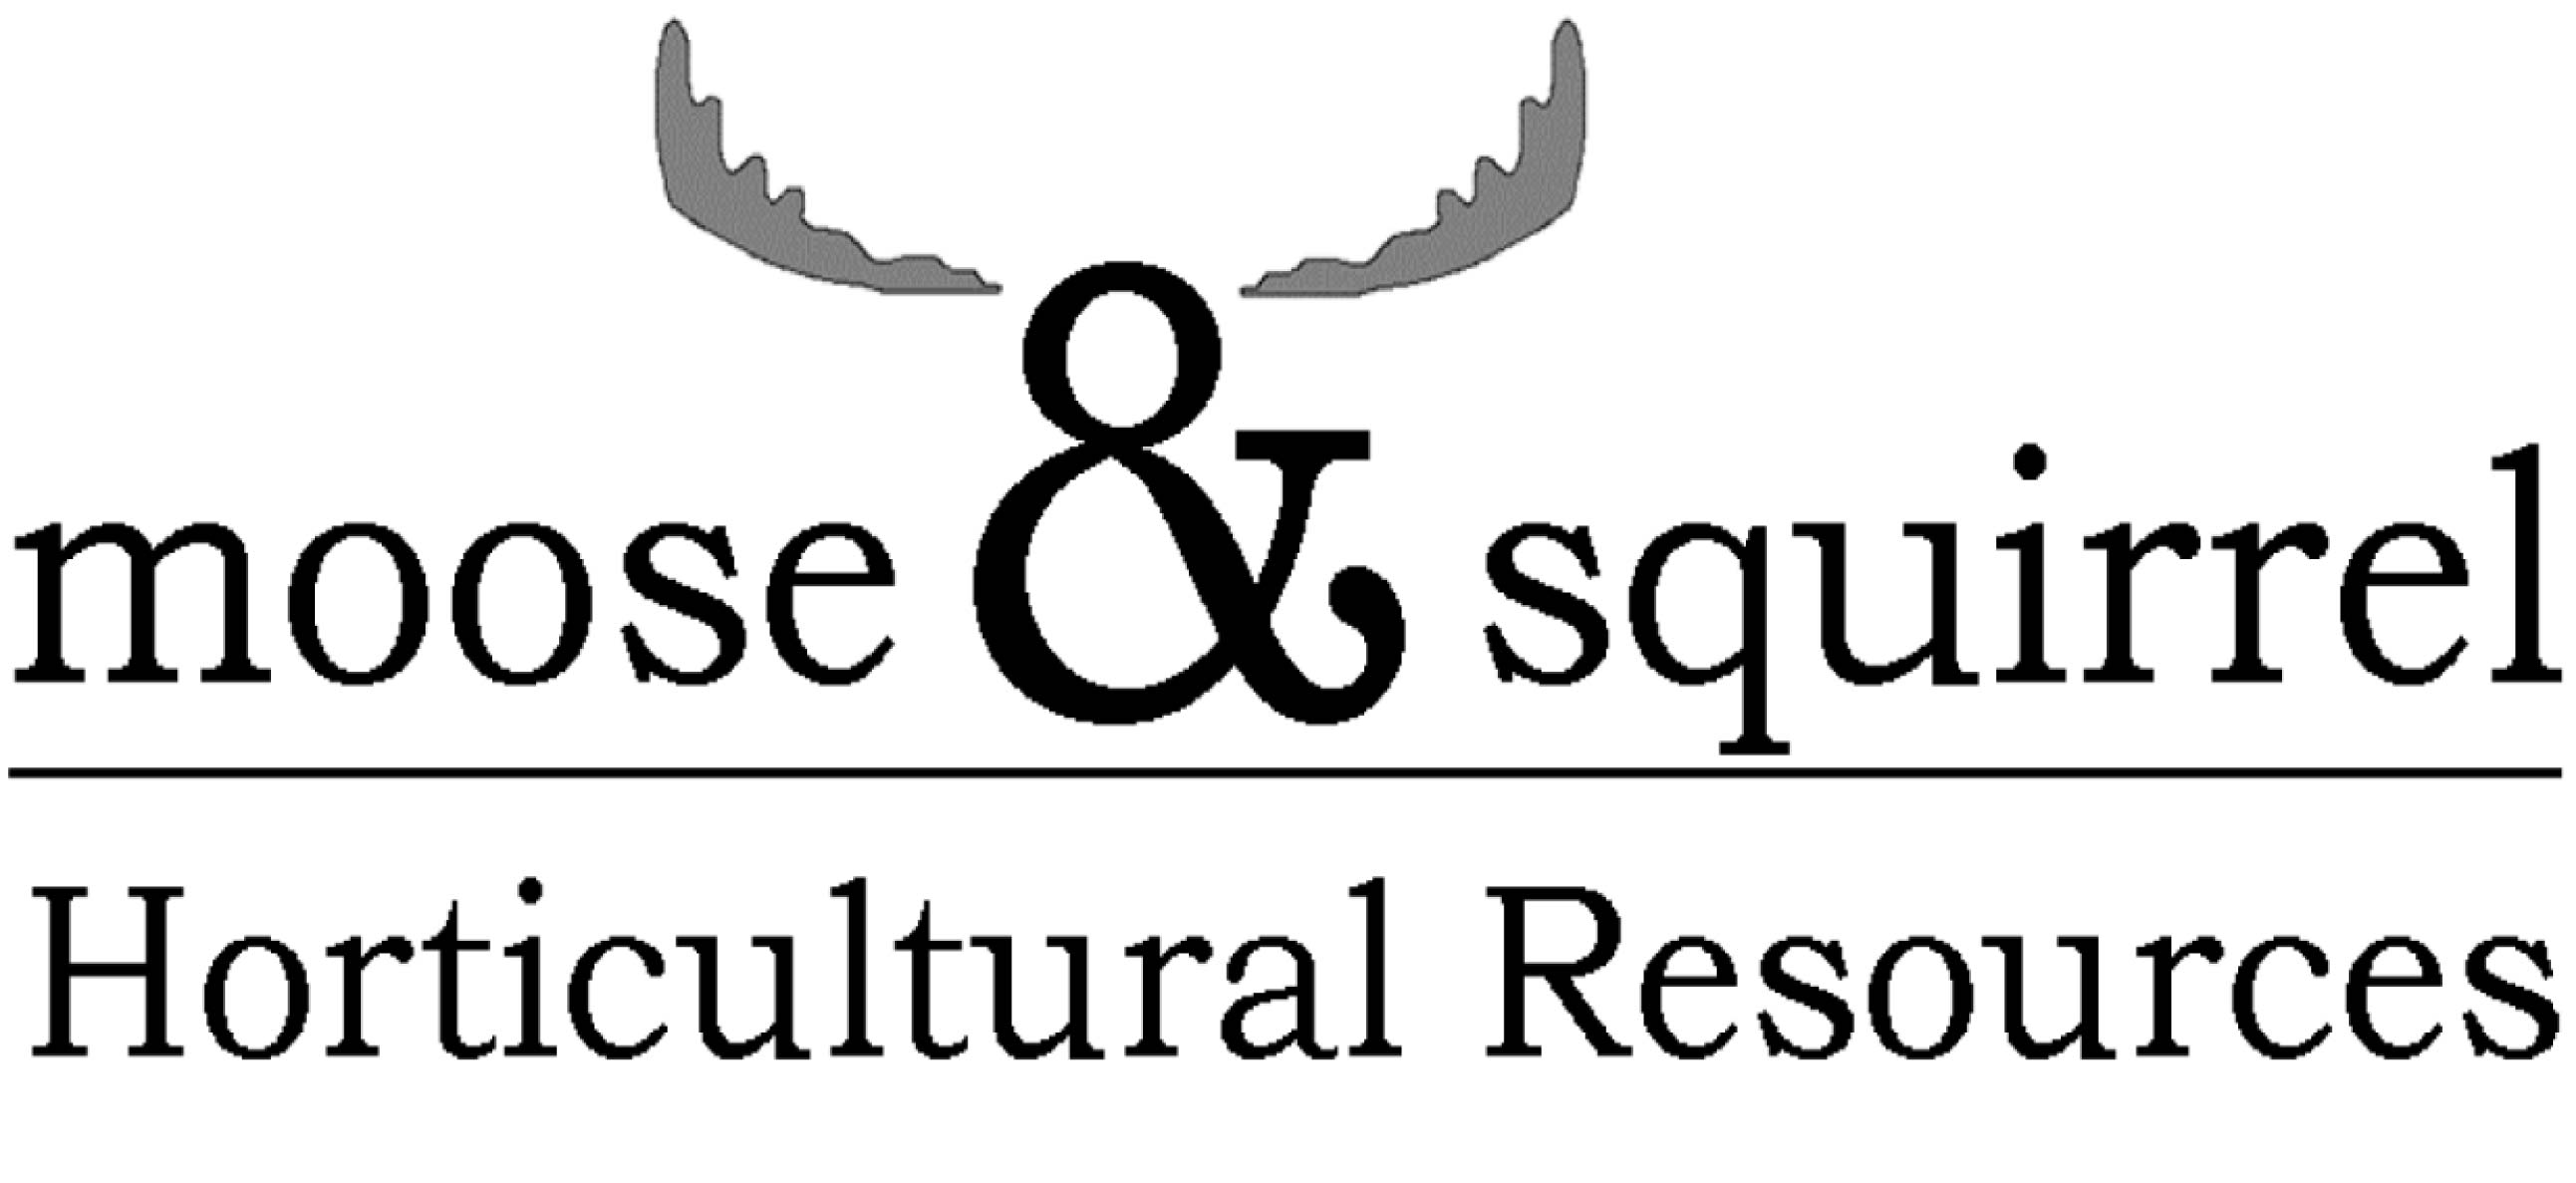 Moose & Squirrel logo